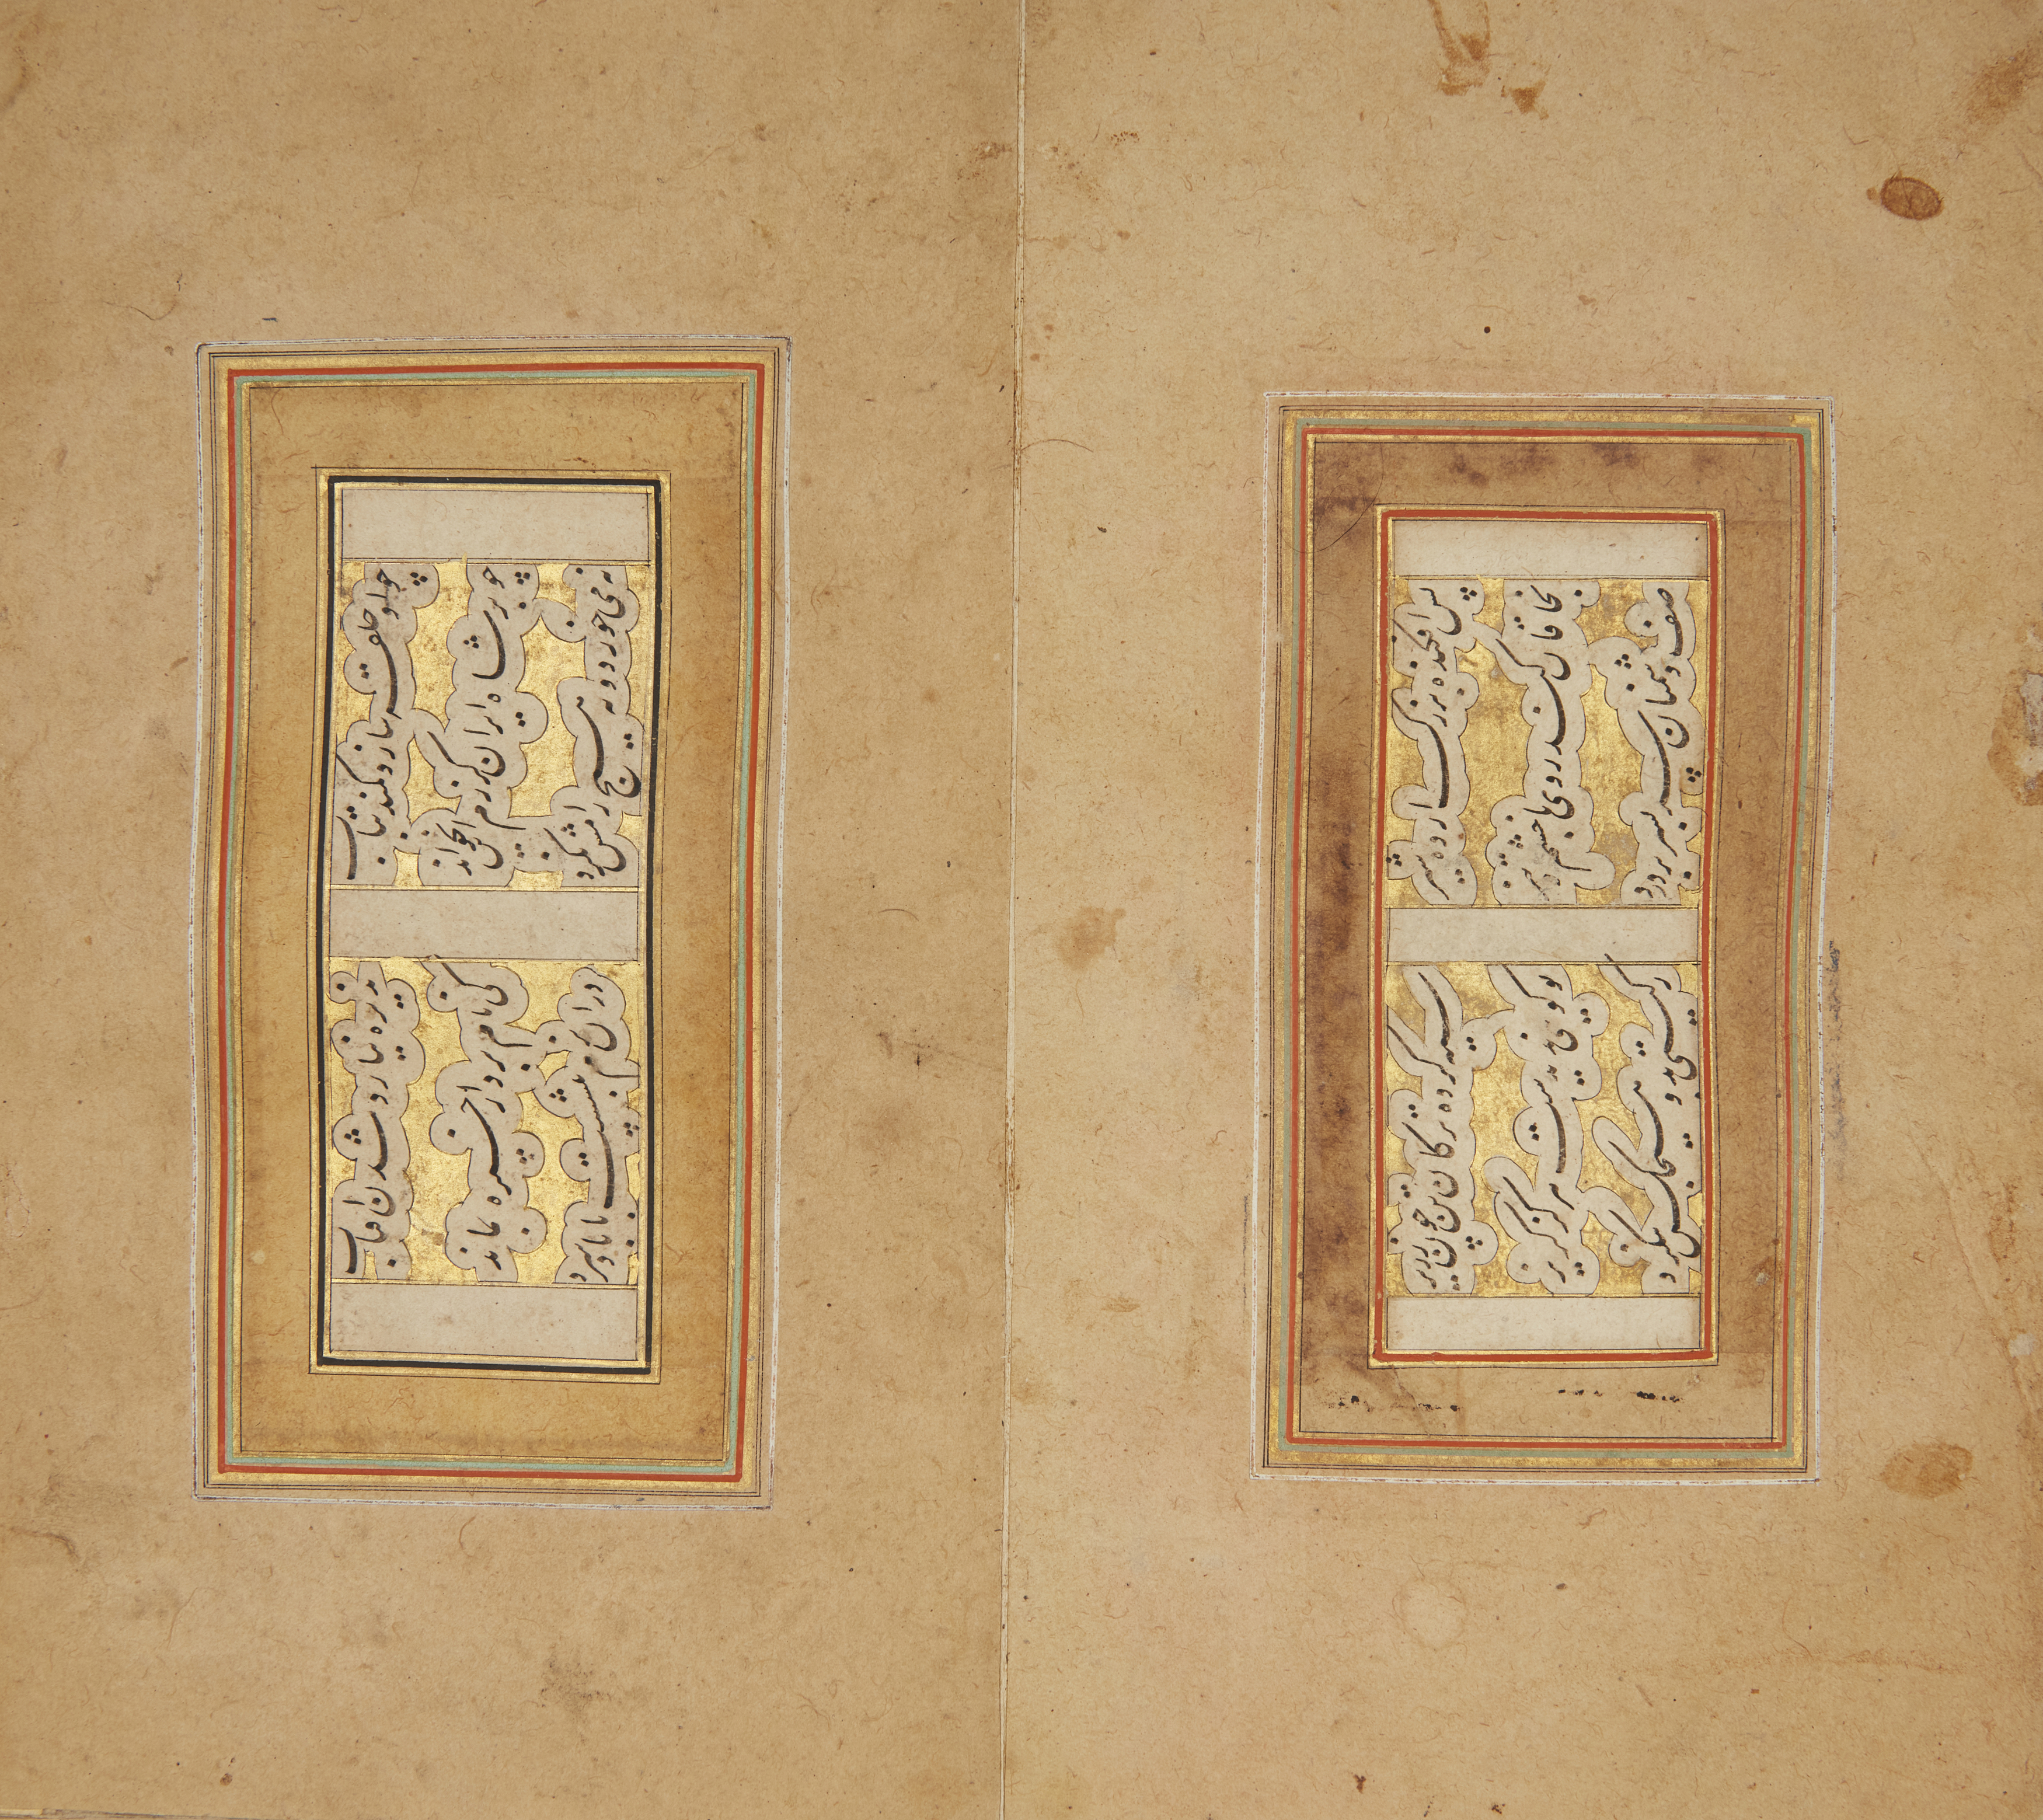 A Safavid calligraphic album, Iran, first quarter 17th century, Persian manuscript on cream pap... - Image 2 of 3